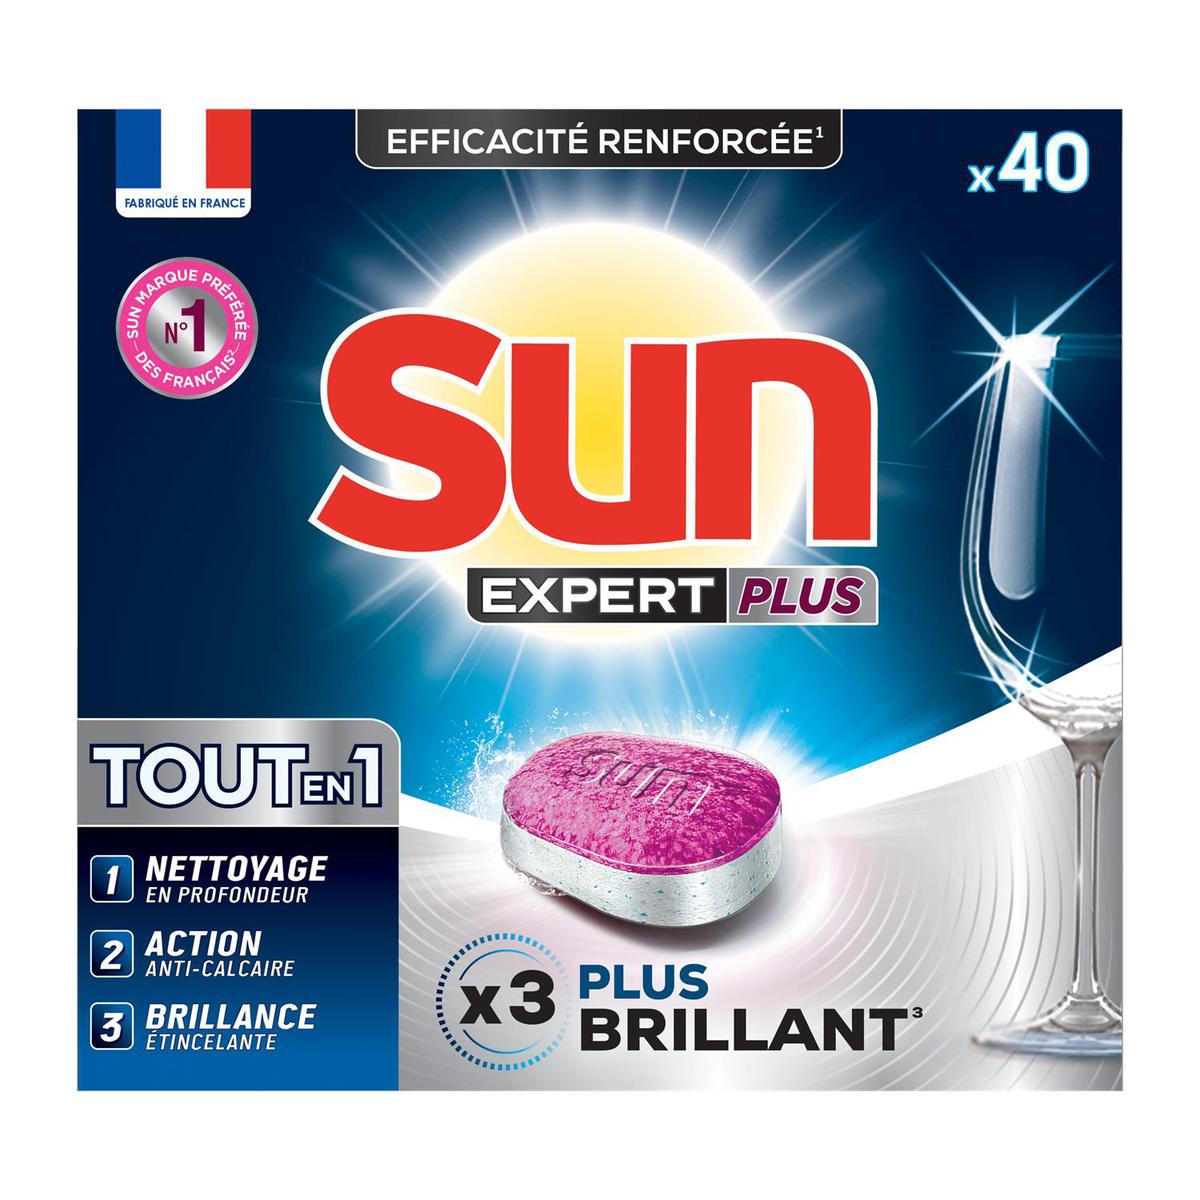 Promotion Sun Capsule lave vaisselle tout en 1 Absolu, 28 capsules